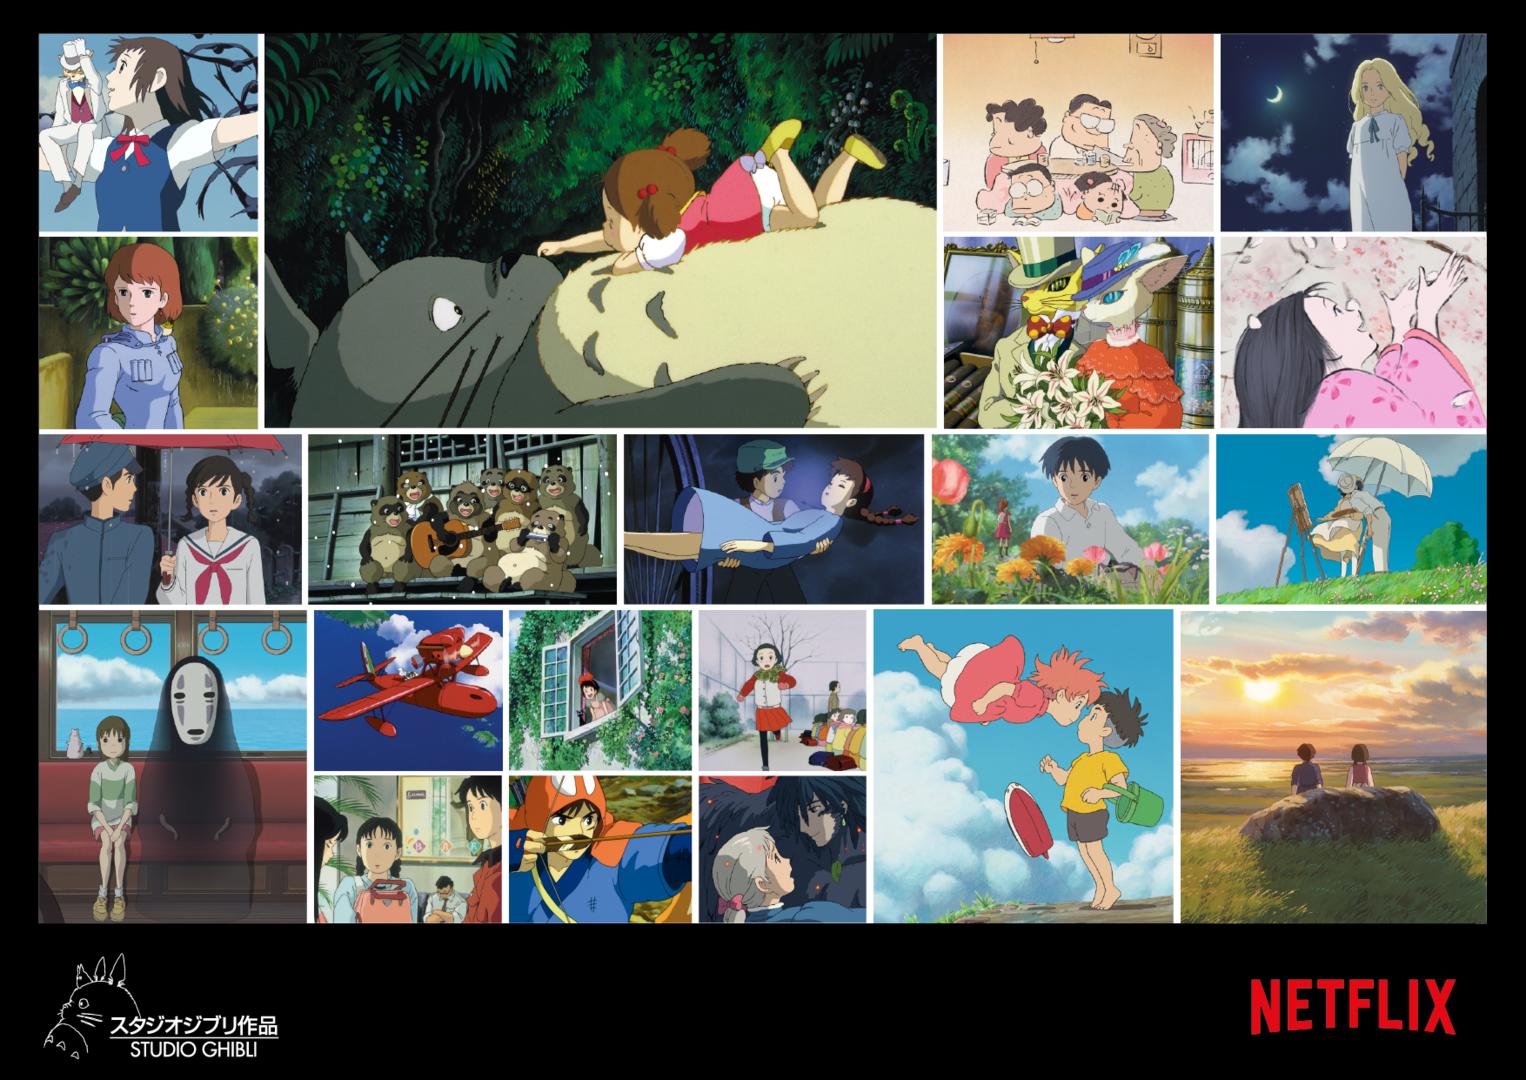 Ab Februar 2020 werden die Animes des Studio Ghibli auf Netflix gezeigt.